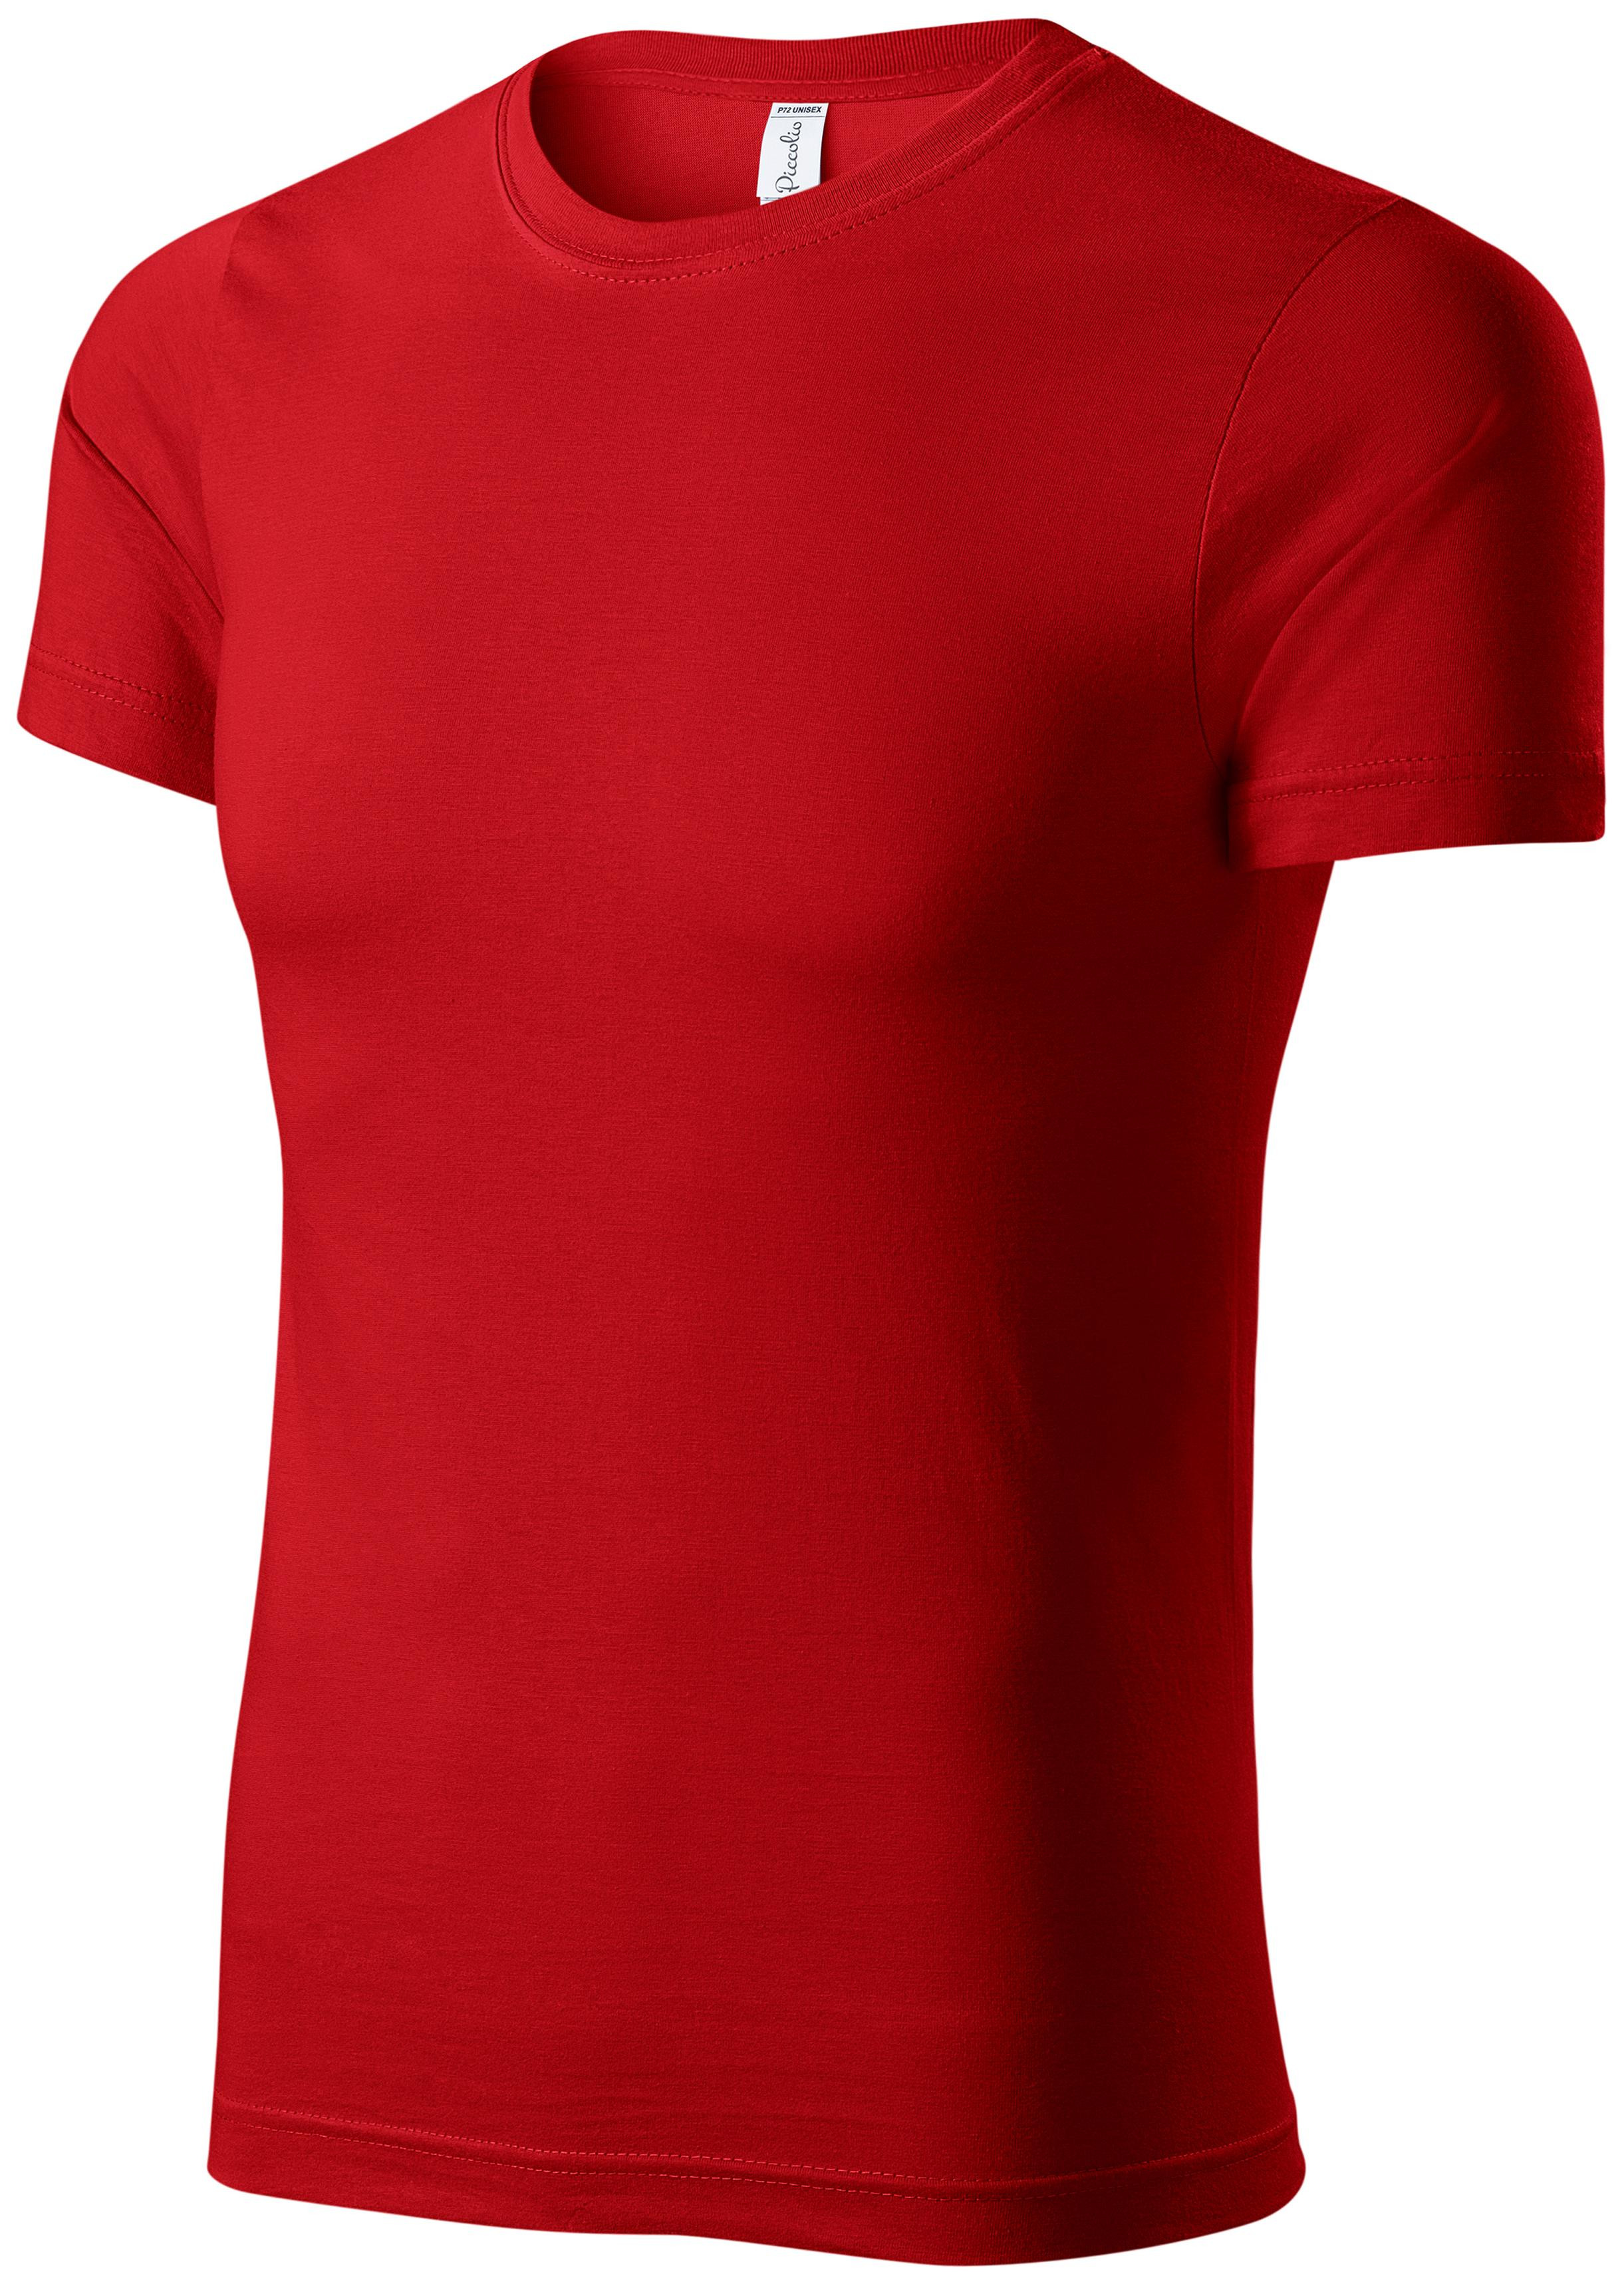 Detské ľahké tričko, červená, 122cm / 6rokov